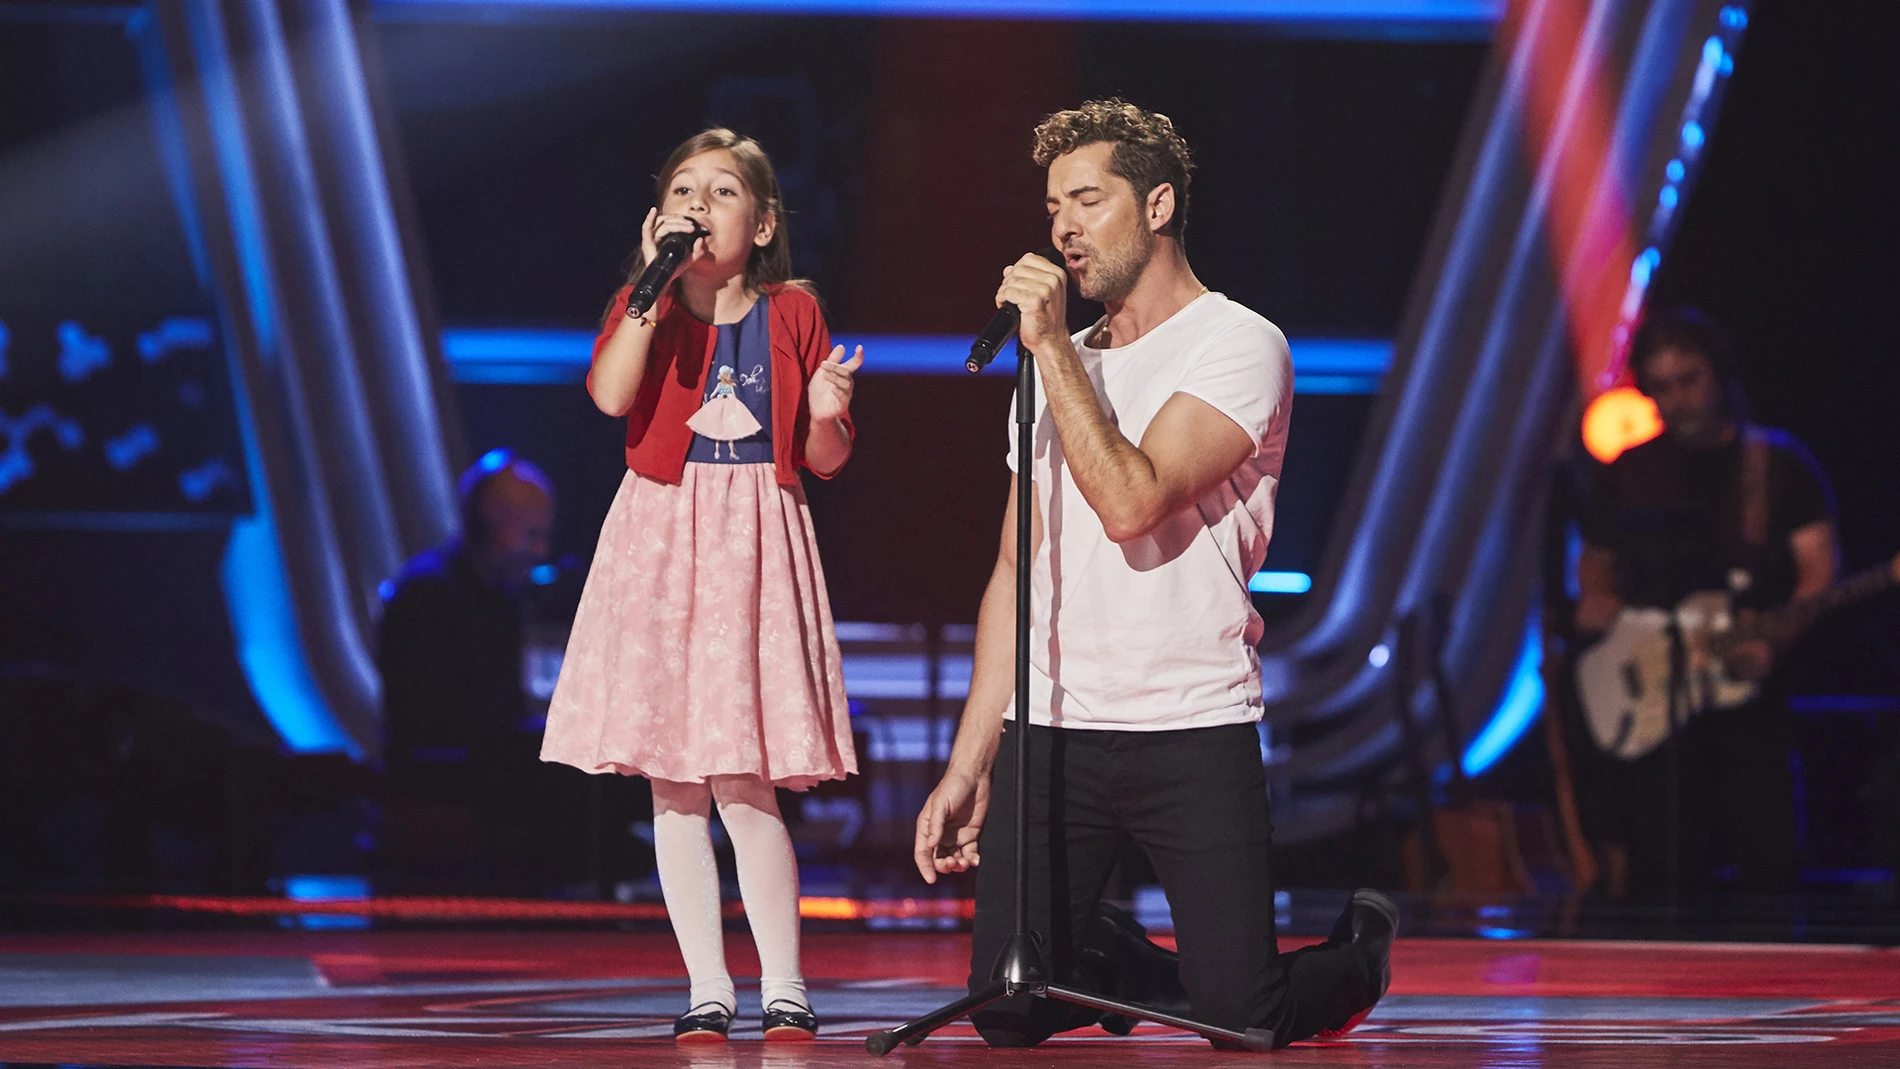 David Bisbal canta 'Mi princesa' con Alison Fernández en las Audiciones a ciegas de 'La Voz Kids'